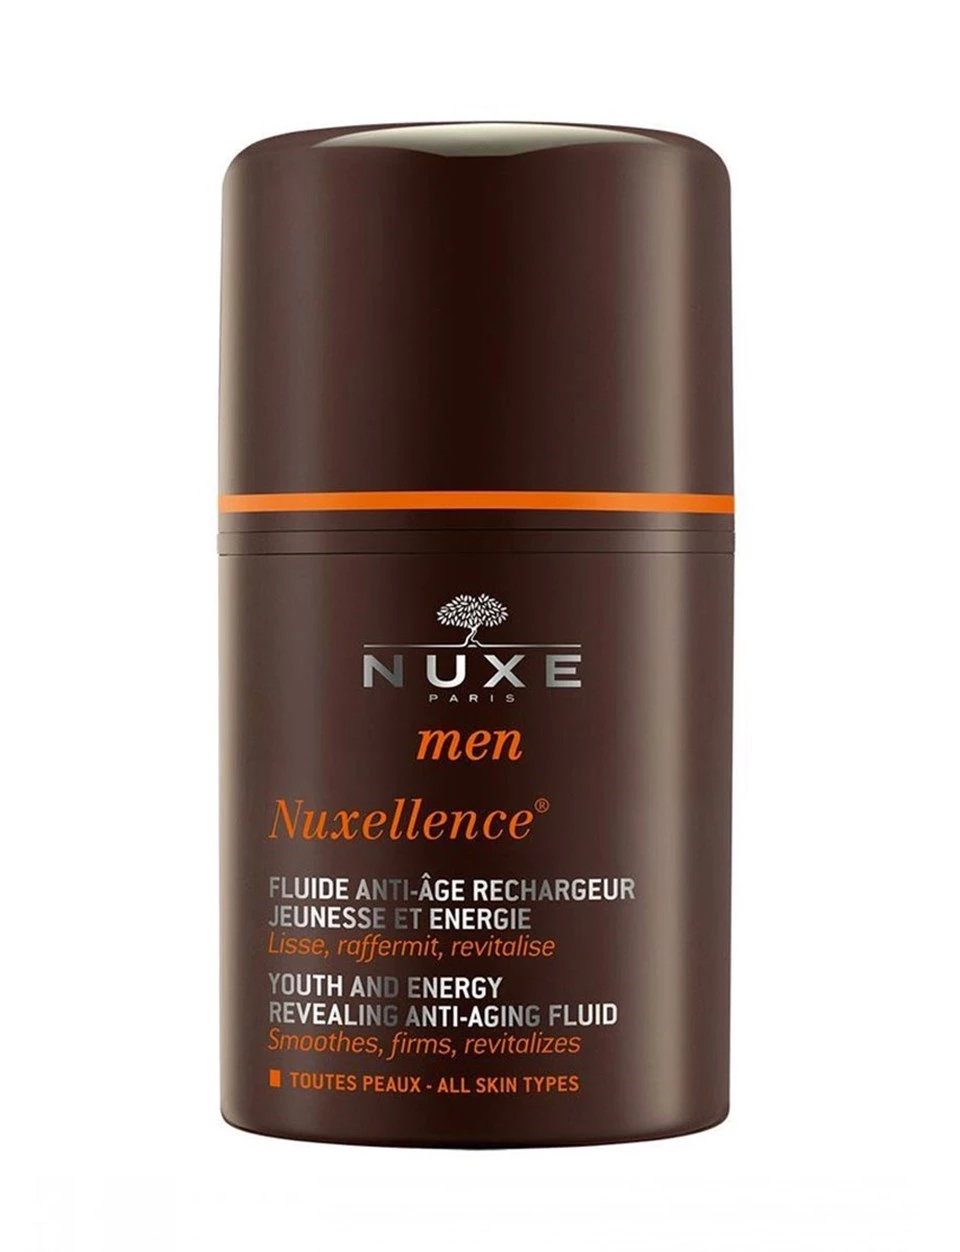 Nuxe Men Nuxellence Fluid Erkeklere özel anti aging bakımı sağlamaya yardımcı fluid.